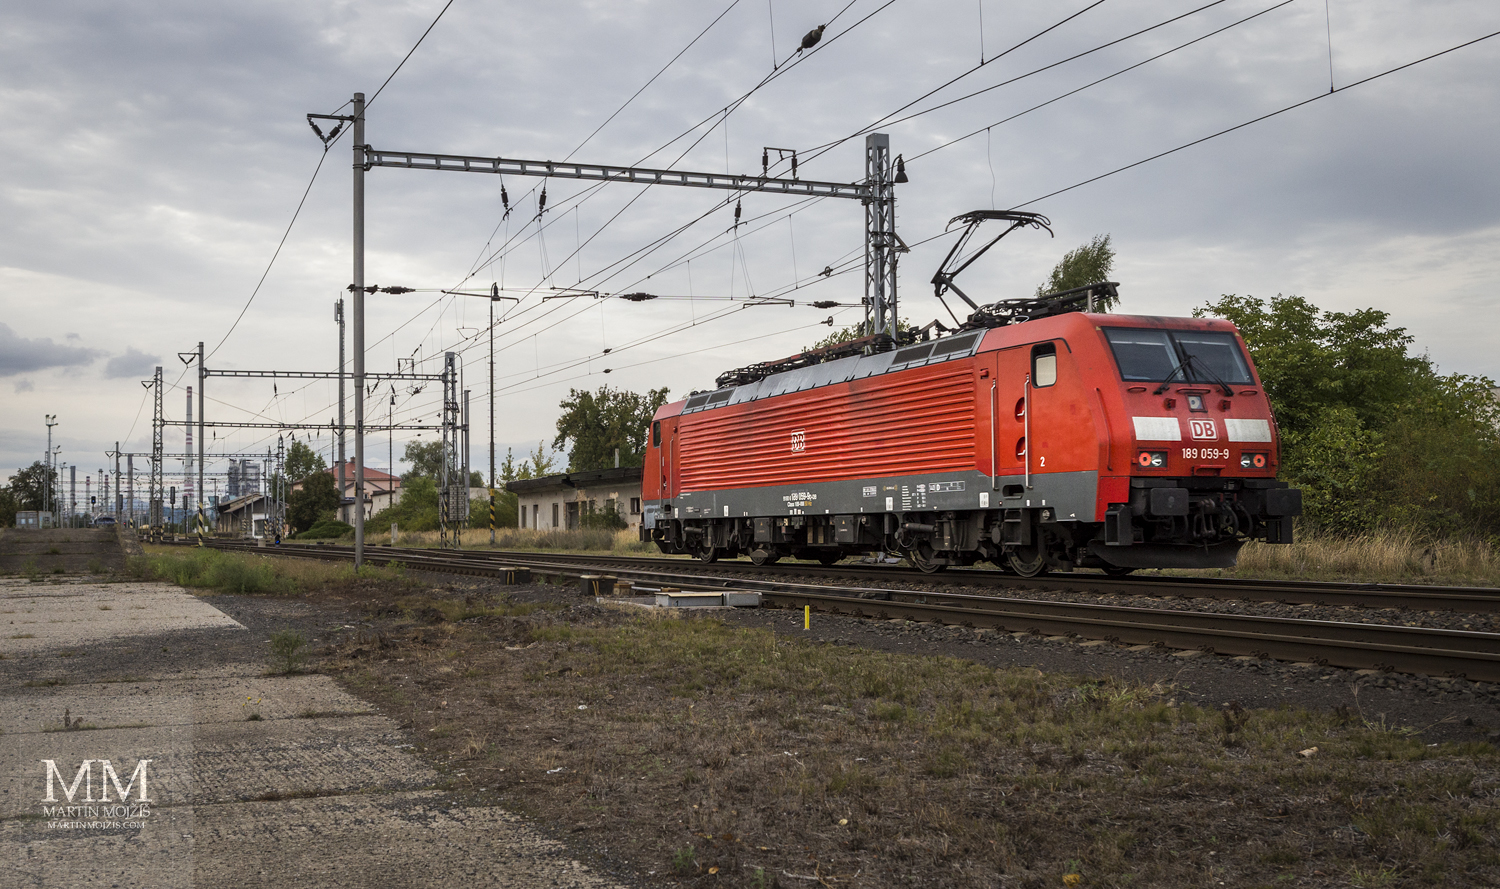 Red locomotive Deutsche Bahn DB 189 059-9.